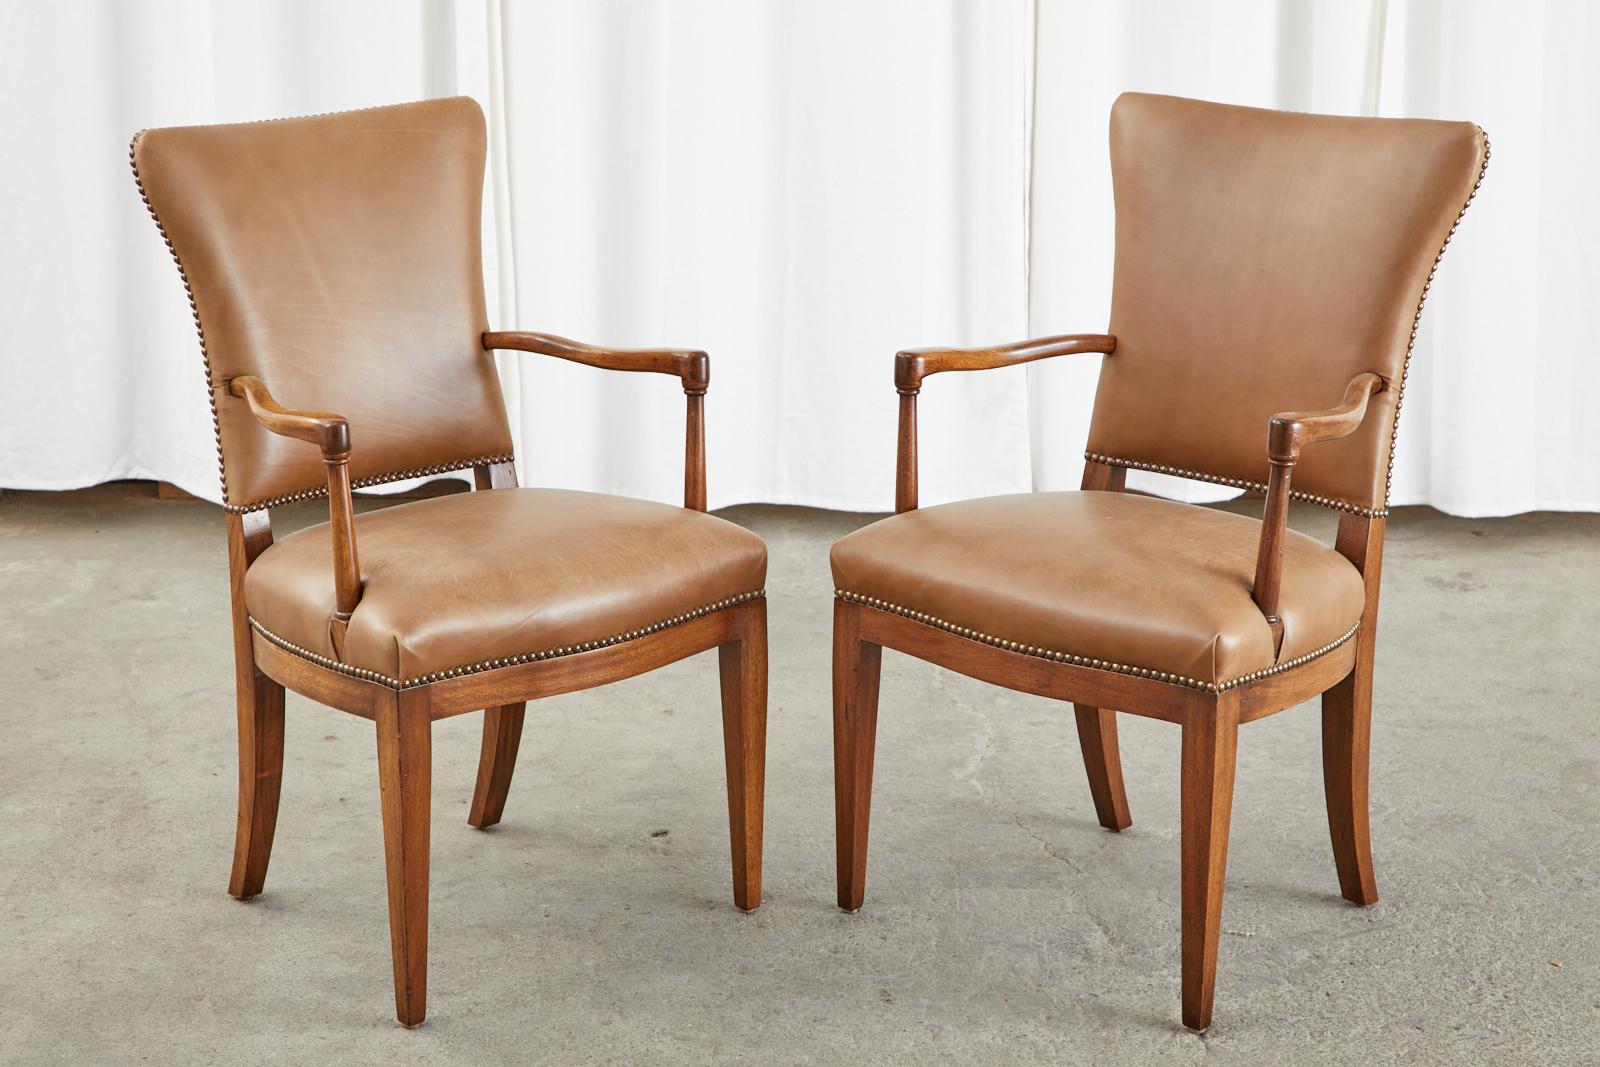 Außergewöhnlicher Satz von vier französischen Art-déco-Stühlen aus strahlendem Mahagoni nach Jules Leleu. Die Stühle haben eine große, ausgestellte Rückenlehne mit einer konturierten Lehne, die mit einem gealterten Leder bezogen ist. Die Rückenlehne